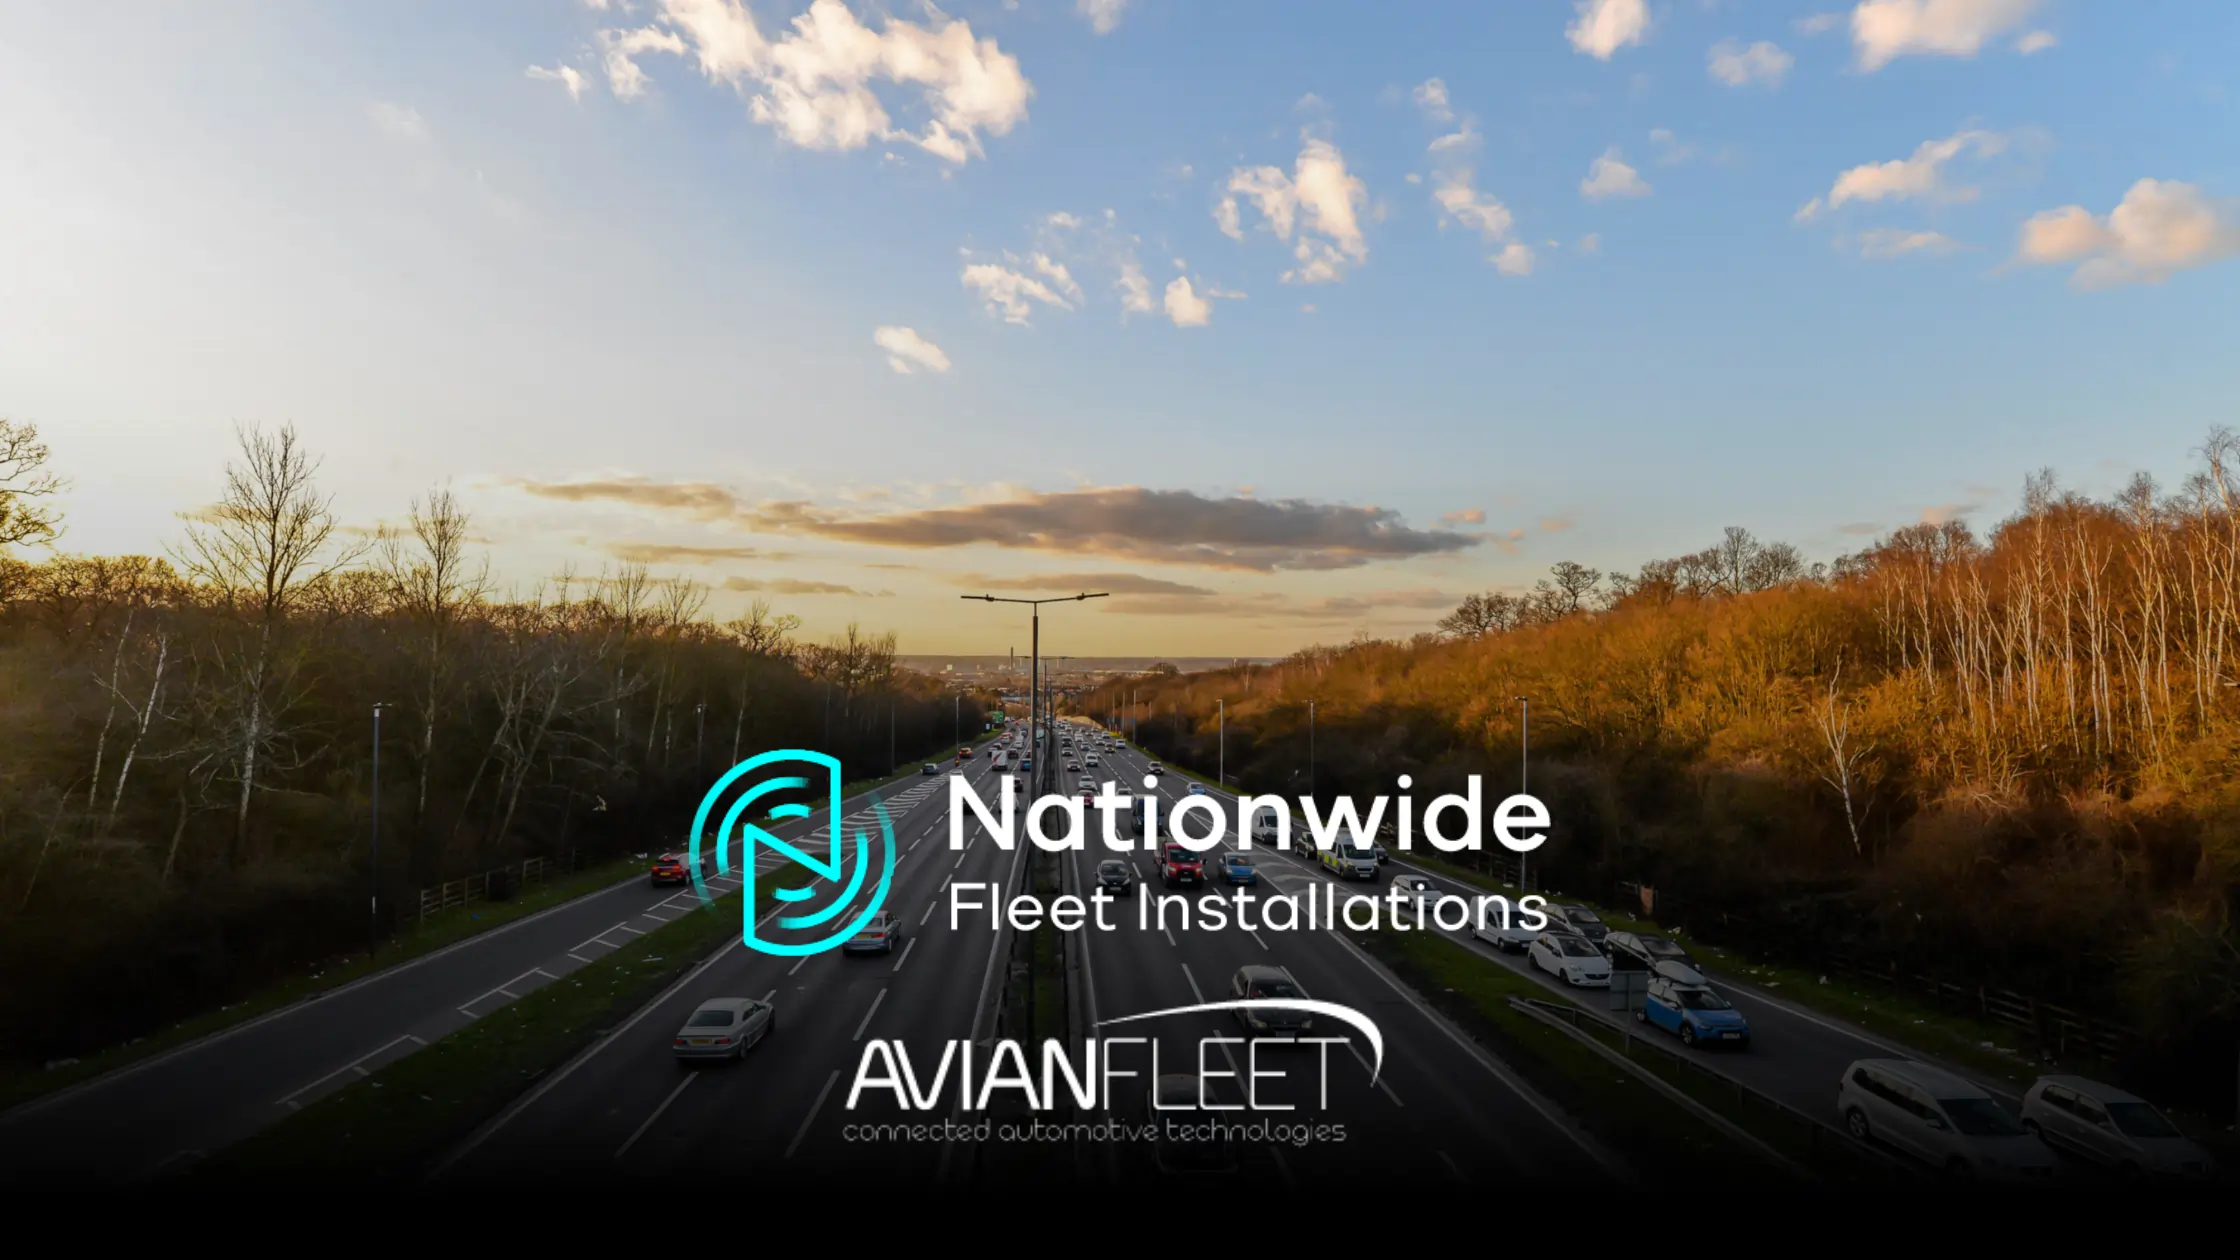 avian fleet & nationwide fleet installations logos